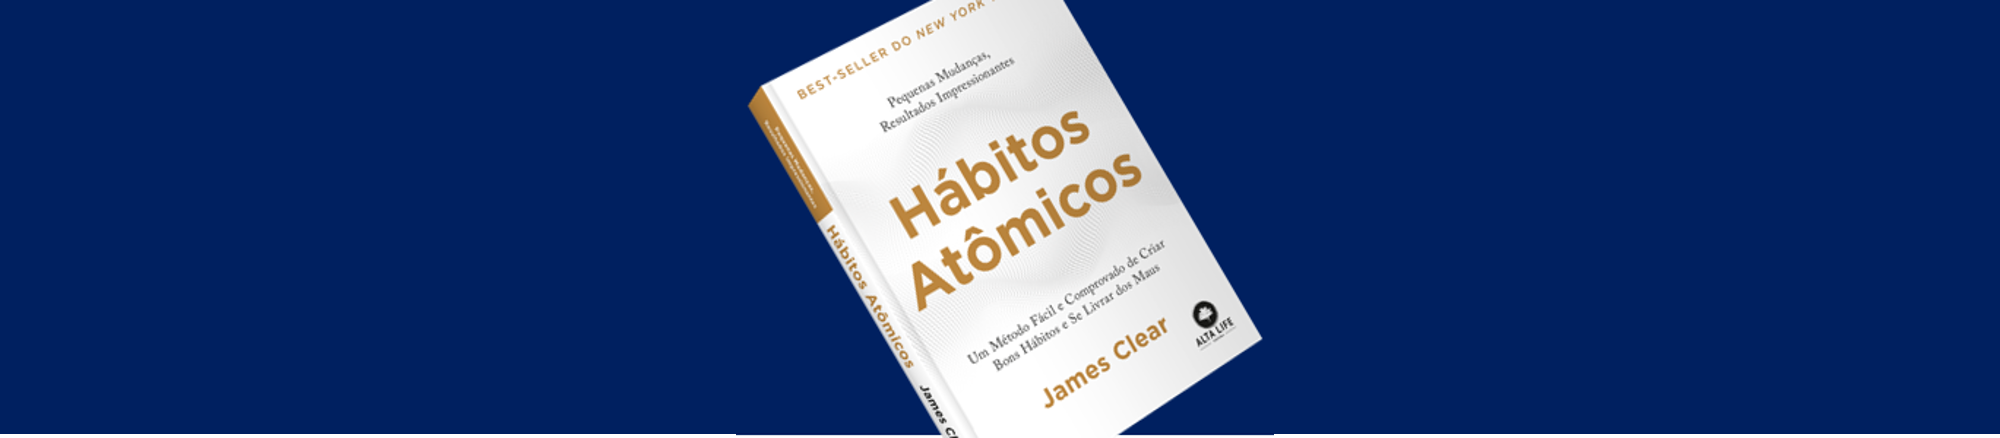 Resumo do Livro: Hábitos Atômicos de James Clear